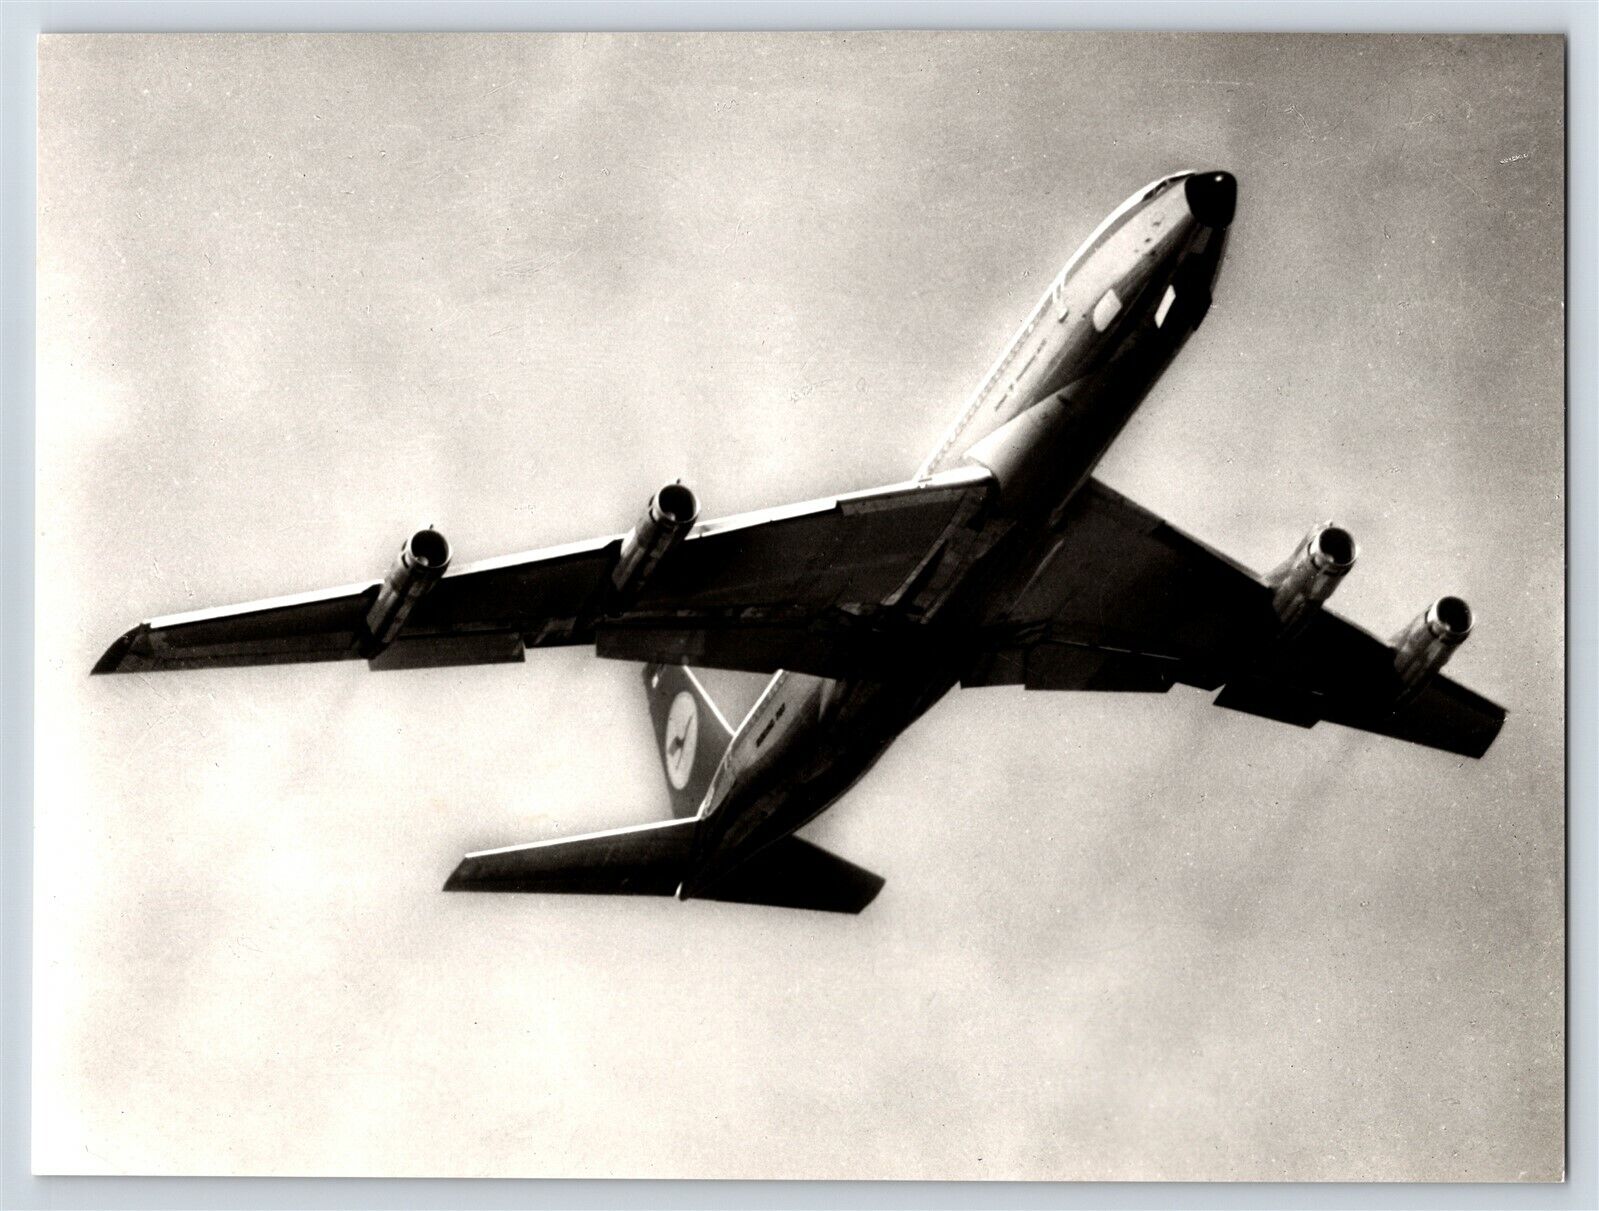 Airplane Lufthansa Issue Boeing 707 Intercontinental Jet Midair B&W Photo C6